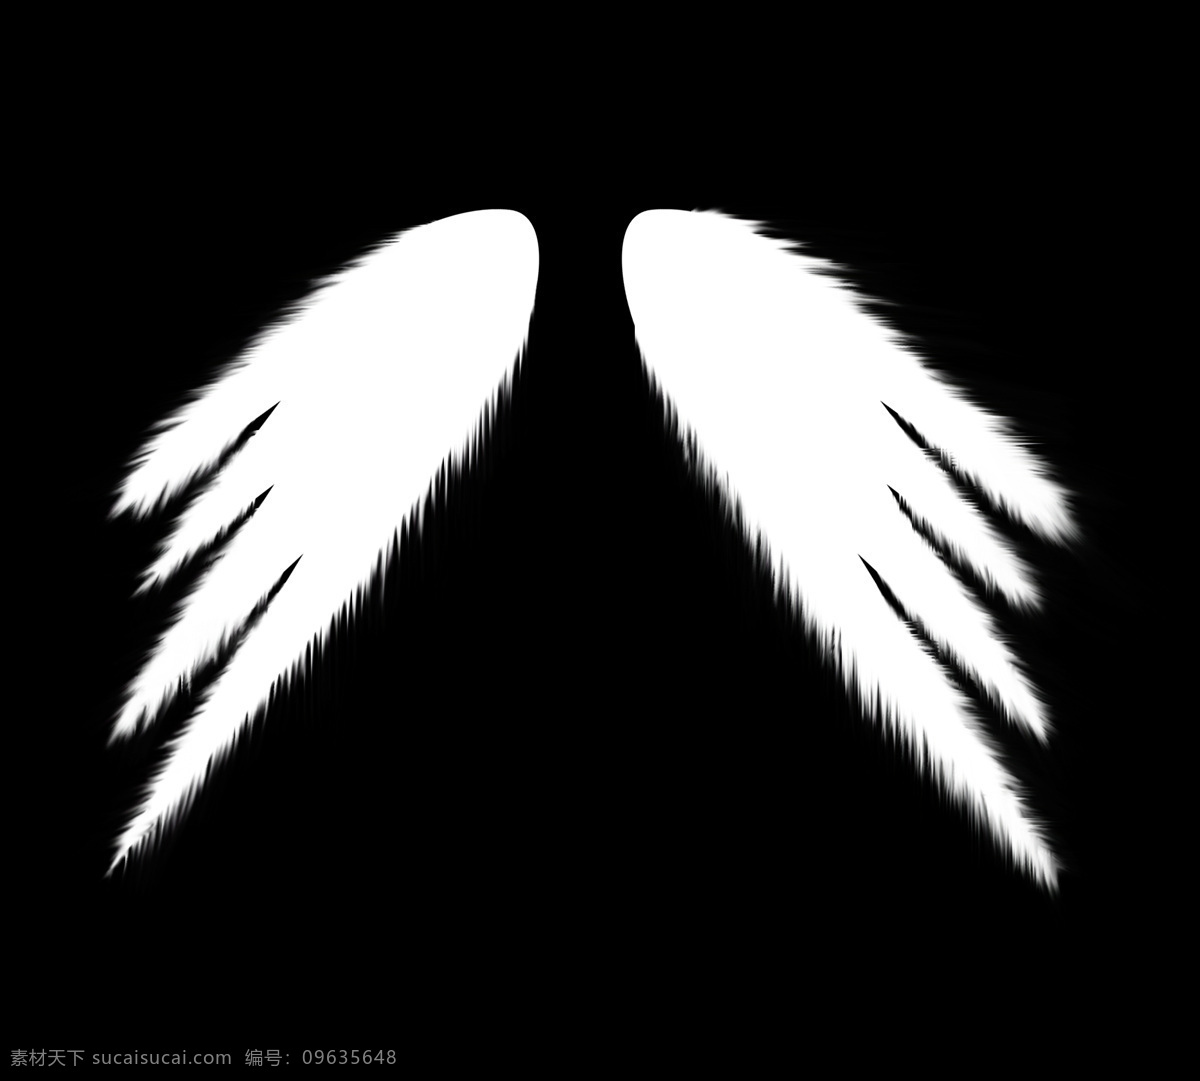 天使 翅膀 单色 黑 天使的翅膀 羽毛 设计素材 模板下载 白 psd源文件